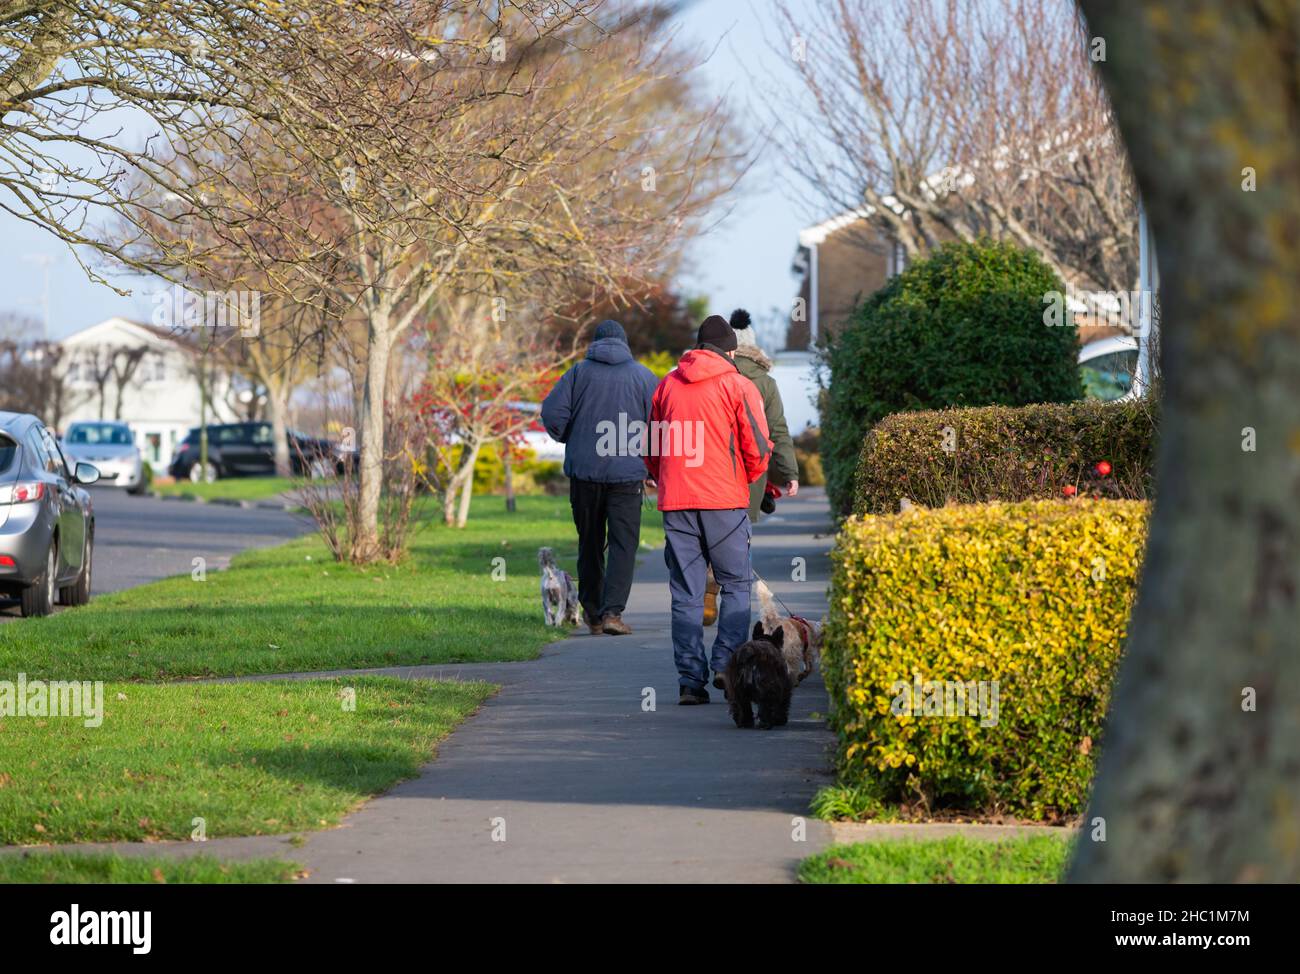 People walking along a roadside pavement in Winter, dressed in warm coats, walking dogs in England, UK. Stock Photo